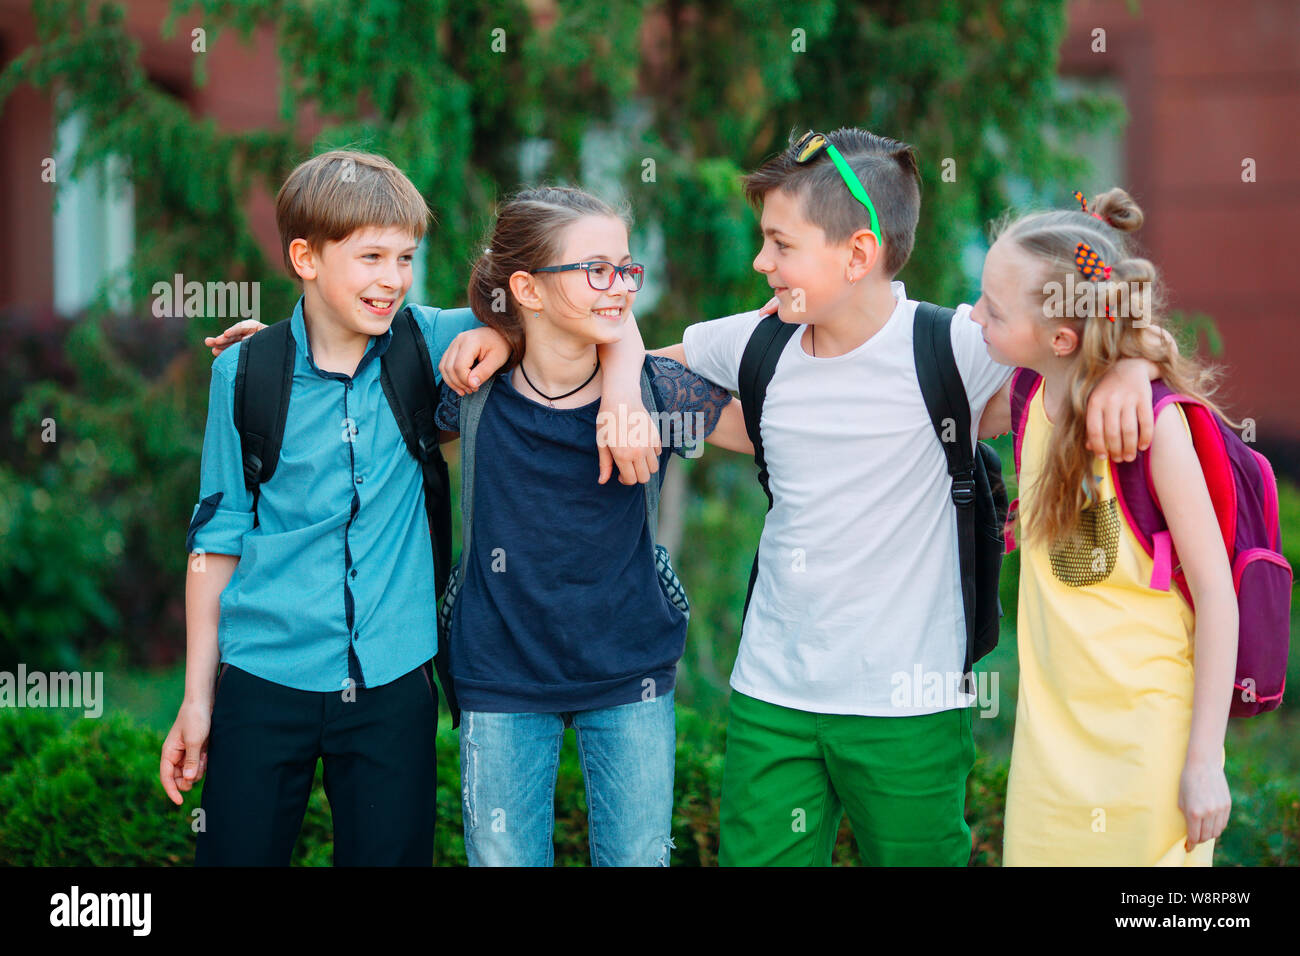 Kinder- Freundschaft. Vier kleine Schüler, zwei Jungen und zwei Mädchen, stand in einer Umarmung auf dem Schulhof. Stockfoto